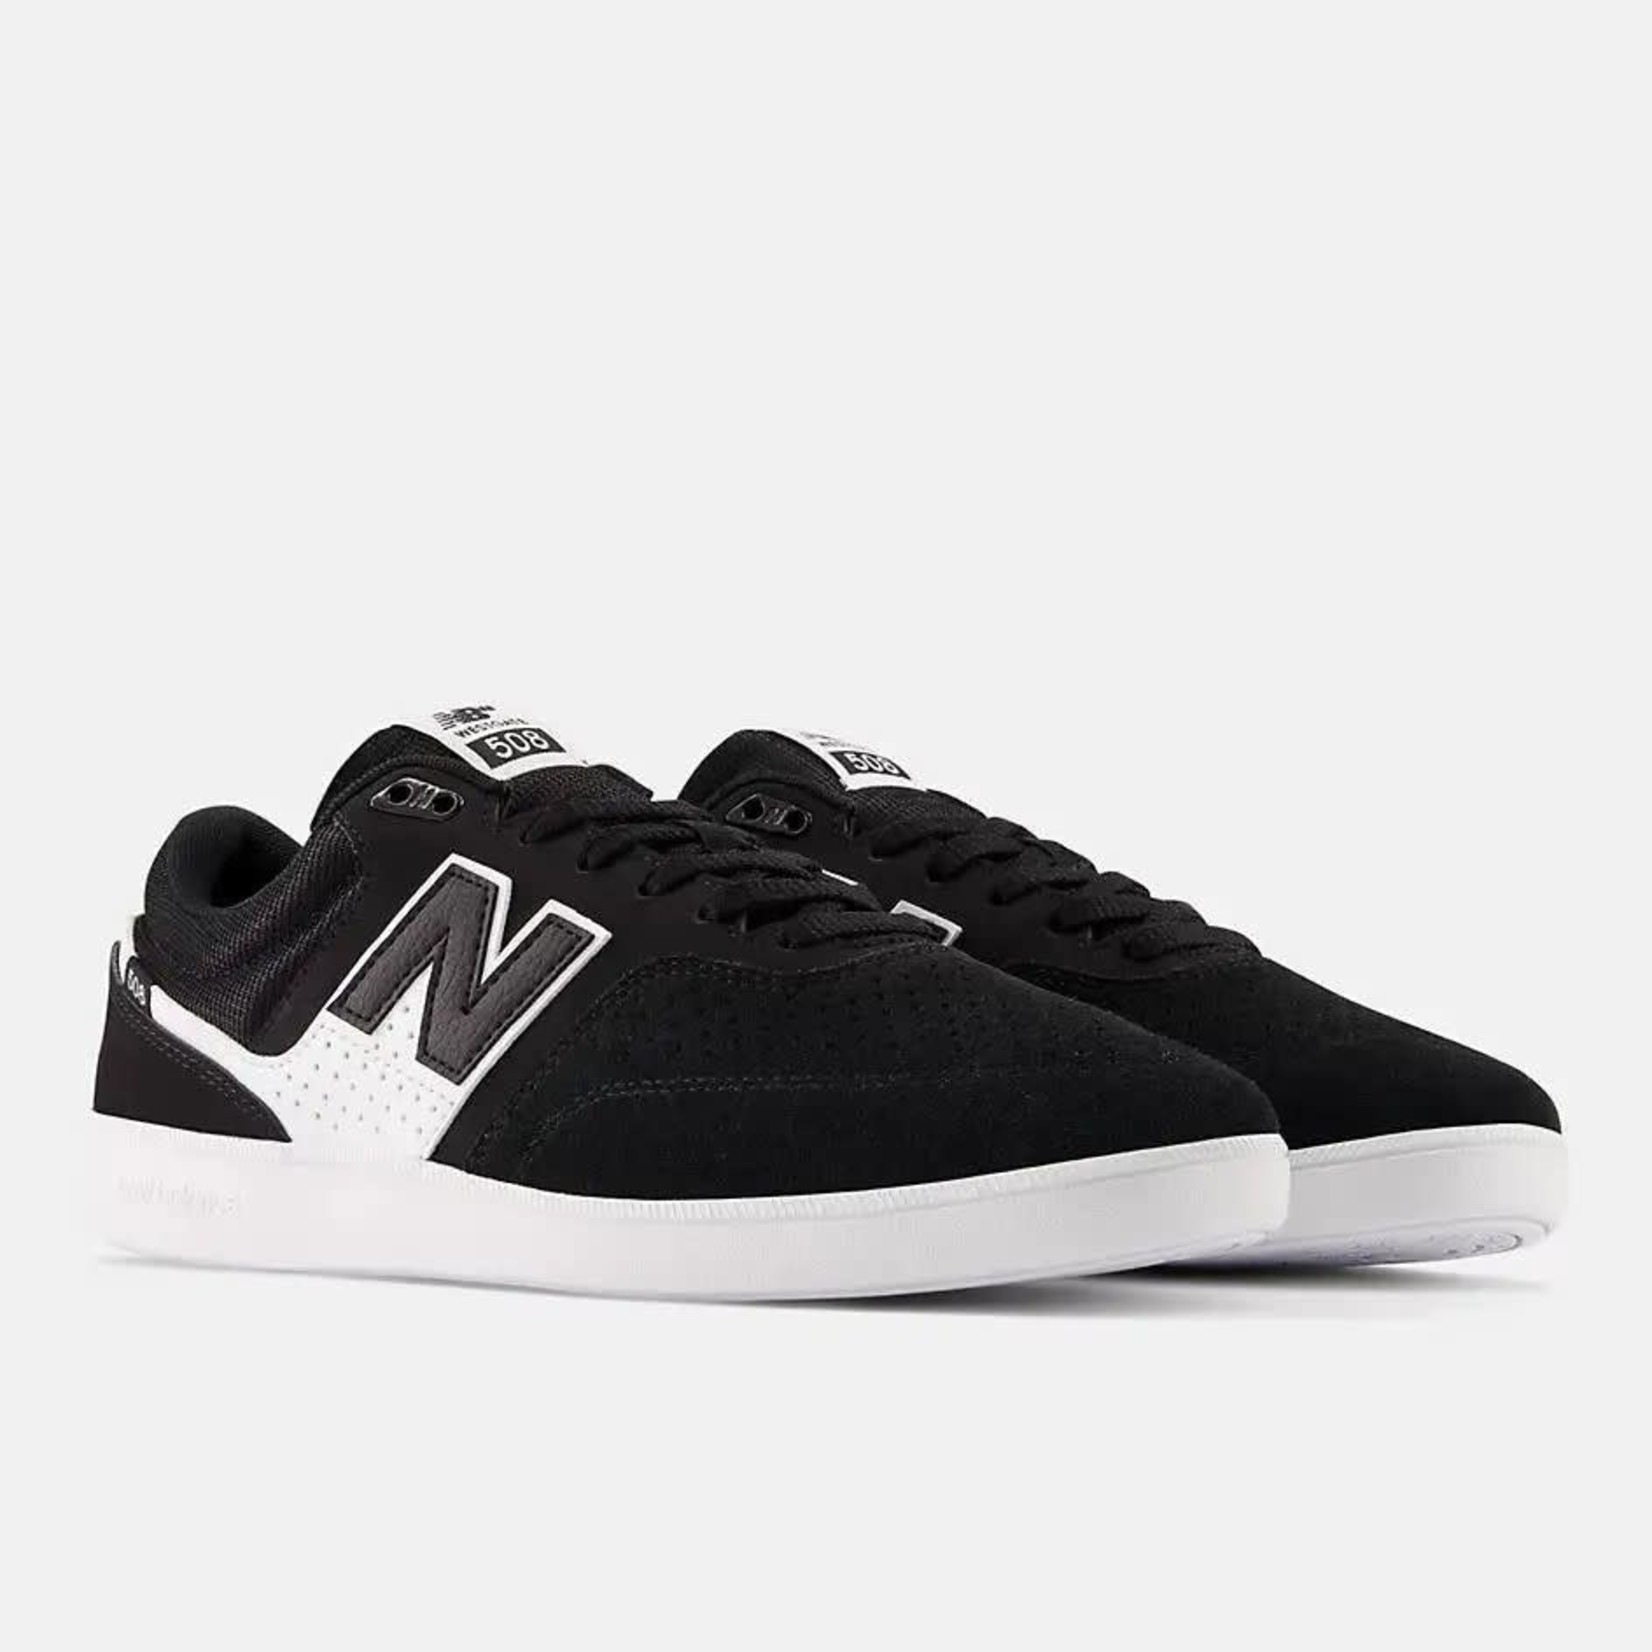 New Balance New Balance 508 Westgate Skate Shoe - Black/White